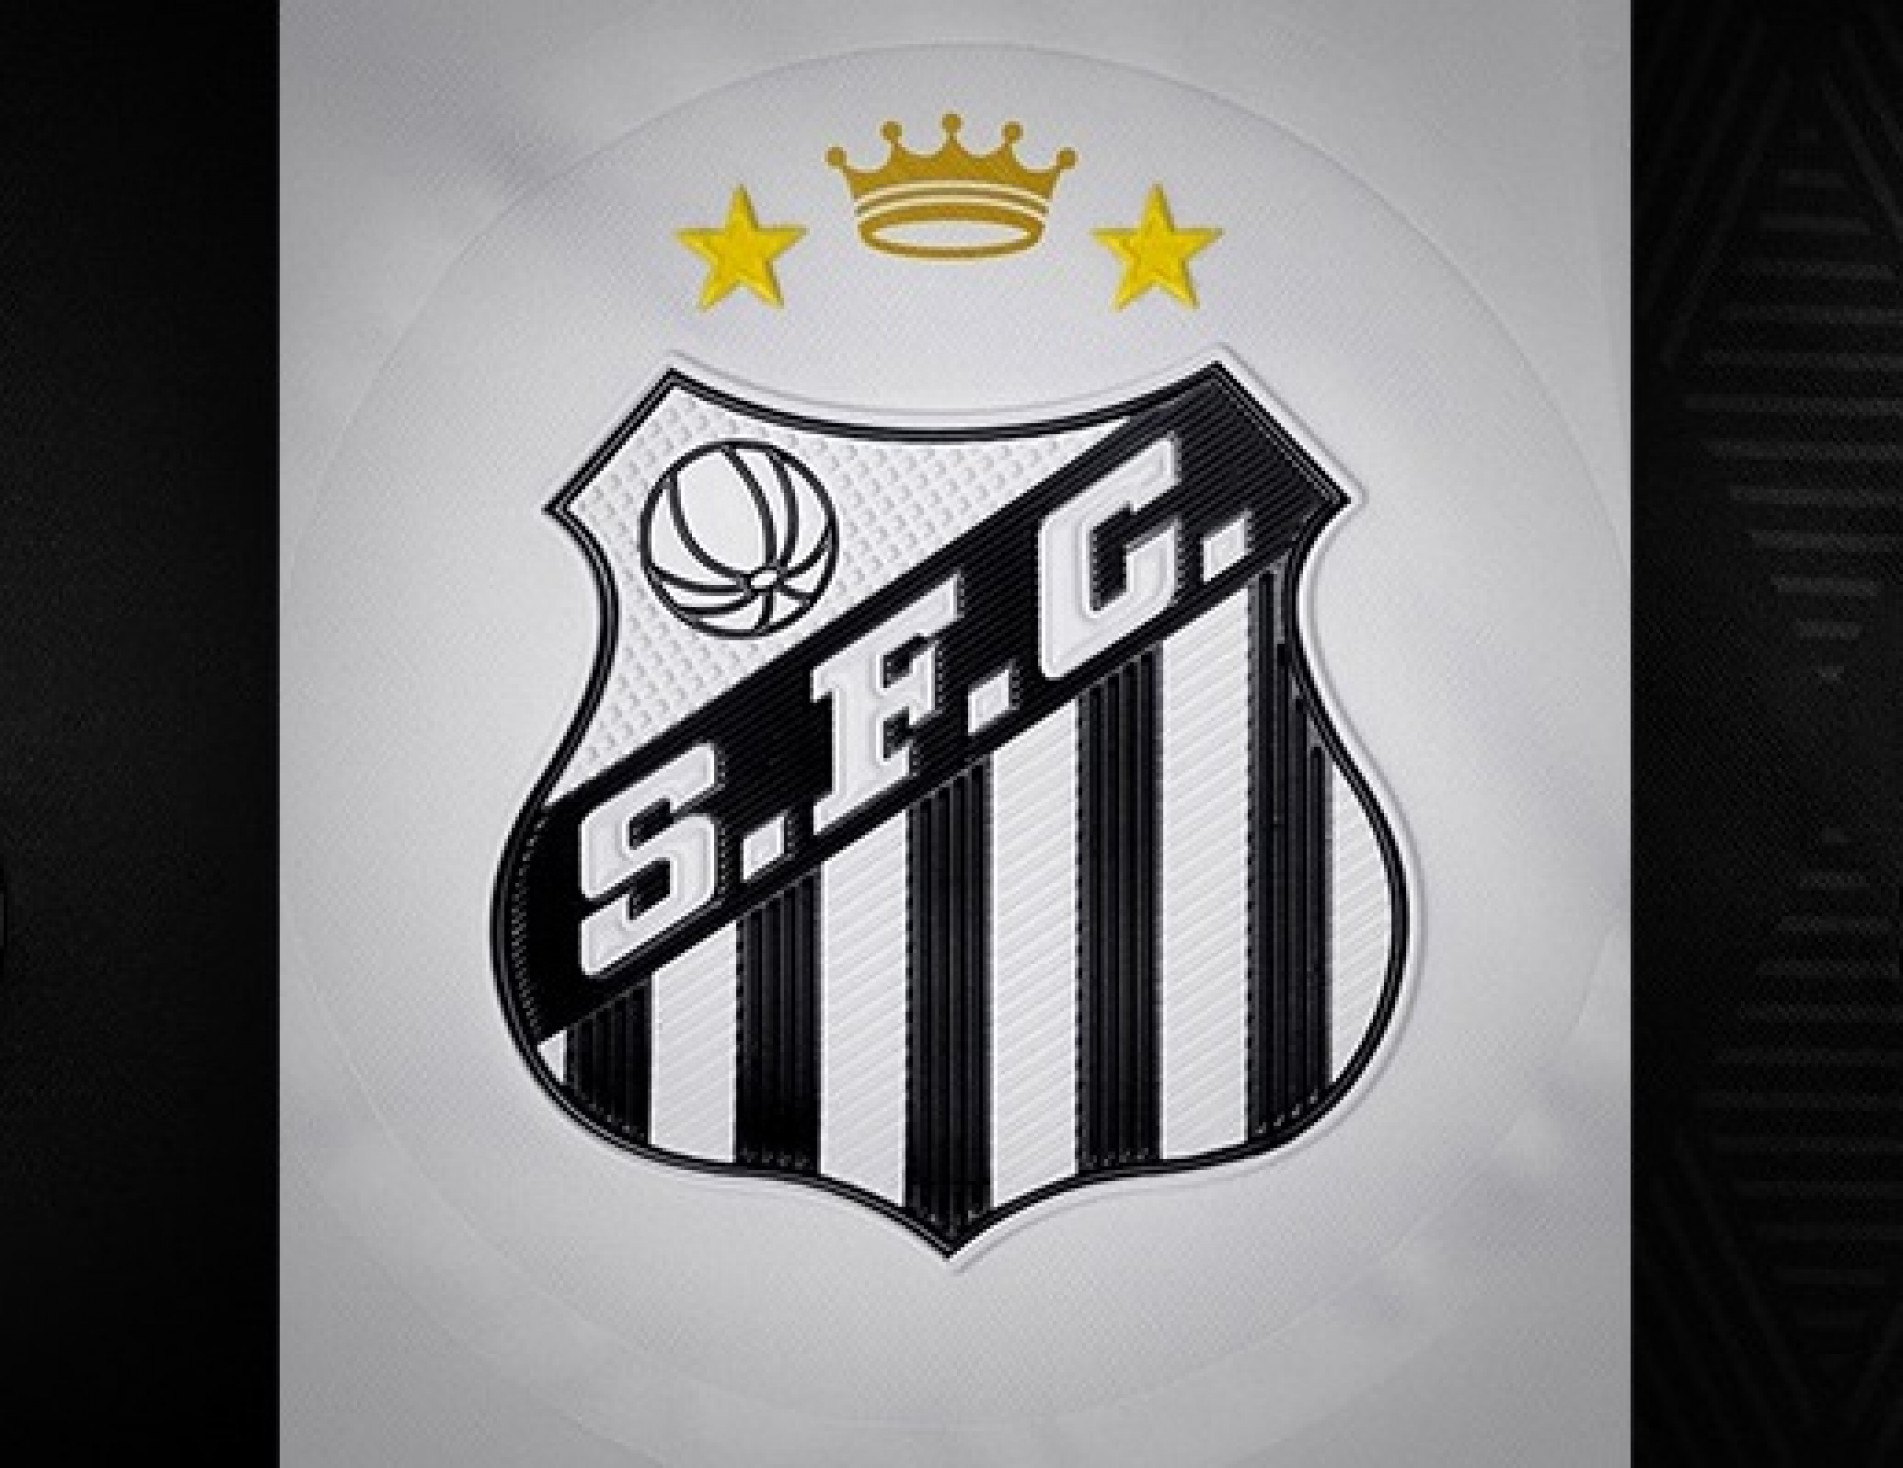 Emblema do Santos Futebol Clube de Santos-SP